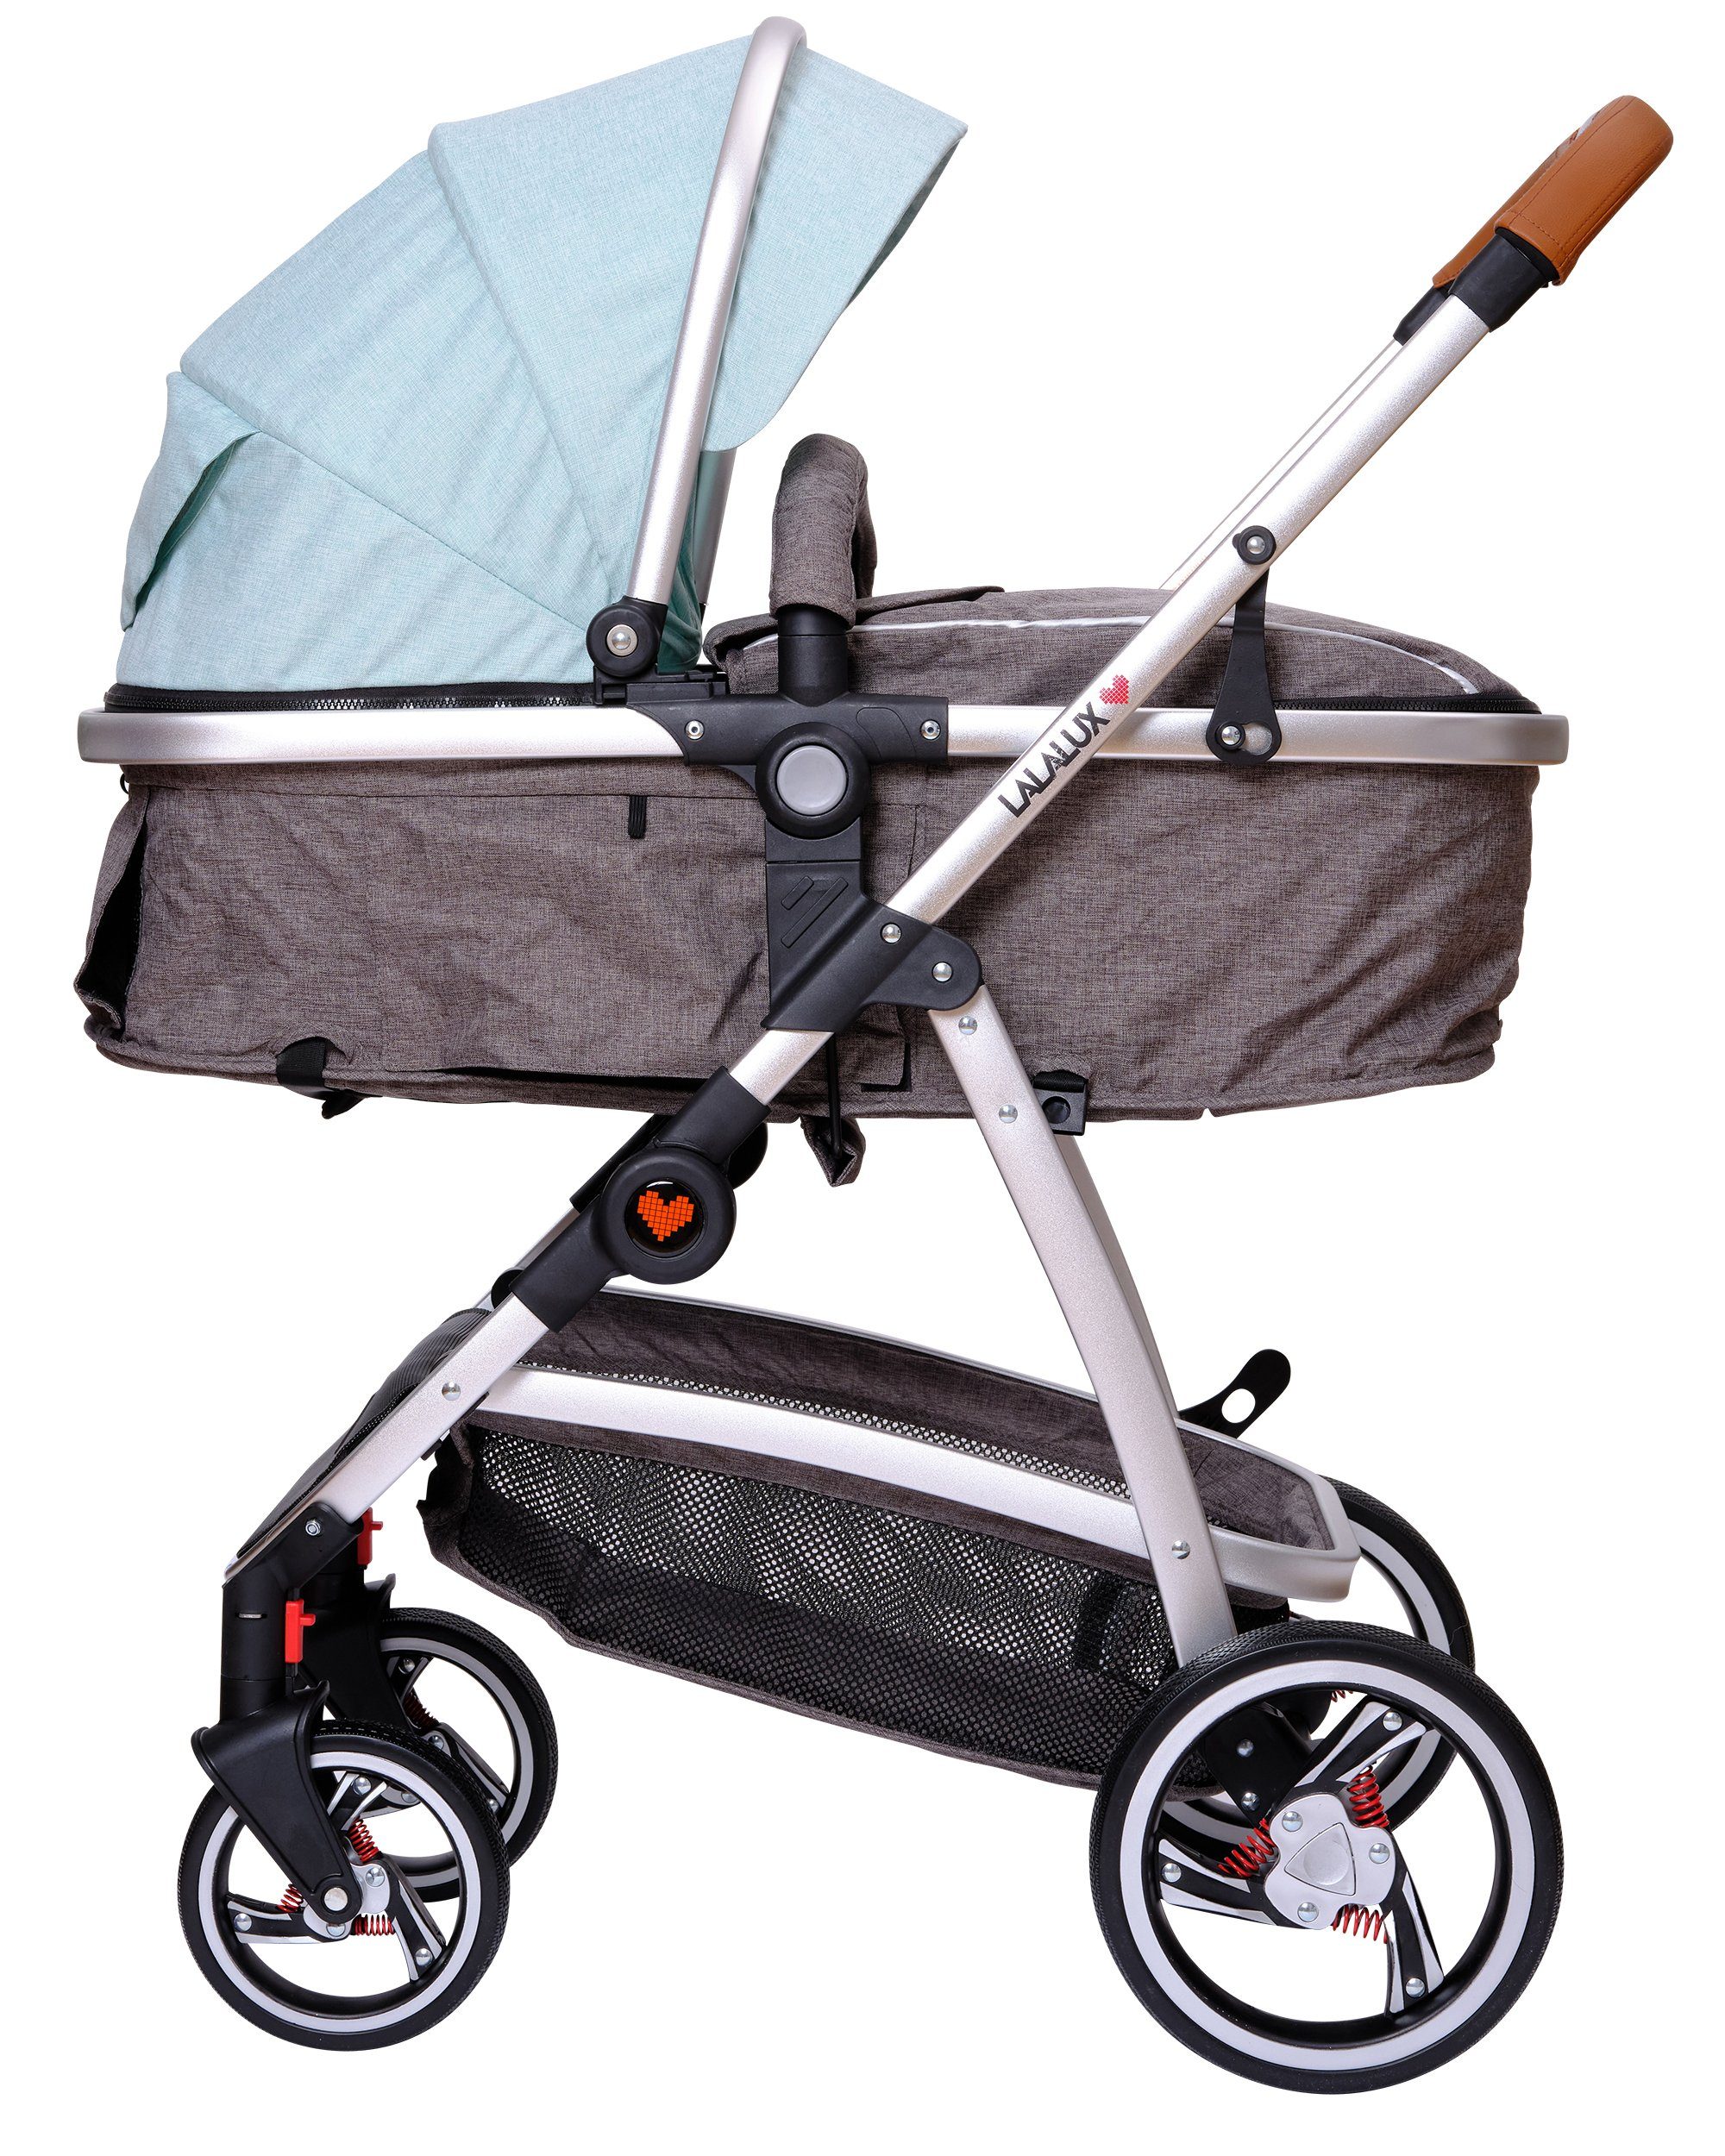 Lalalux Kombi-Kinderwagen Kinderwagen Babyboomer, 3 in 1 Kombi-Kinderwagen, aus wetterfestem und atmungsaktivem Material Dunkelgrau/Mint